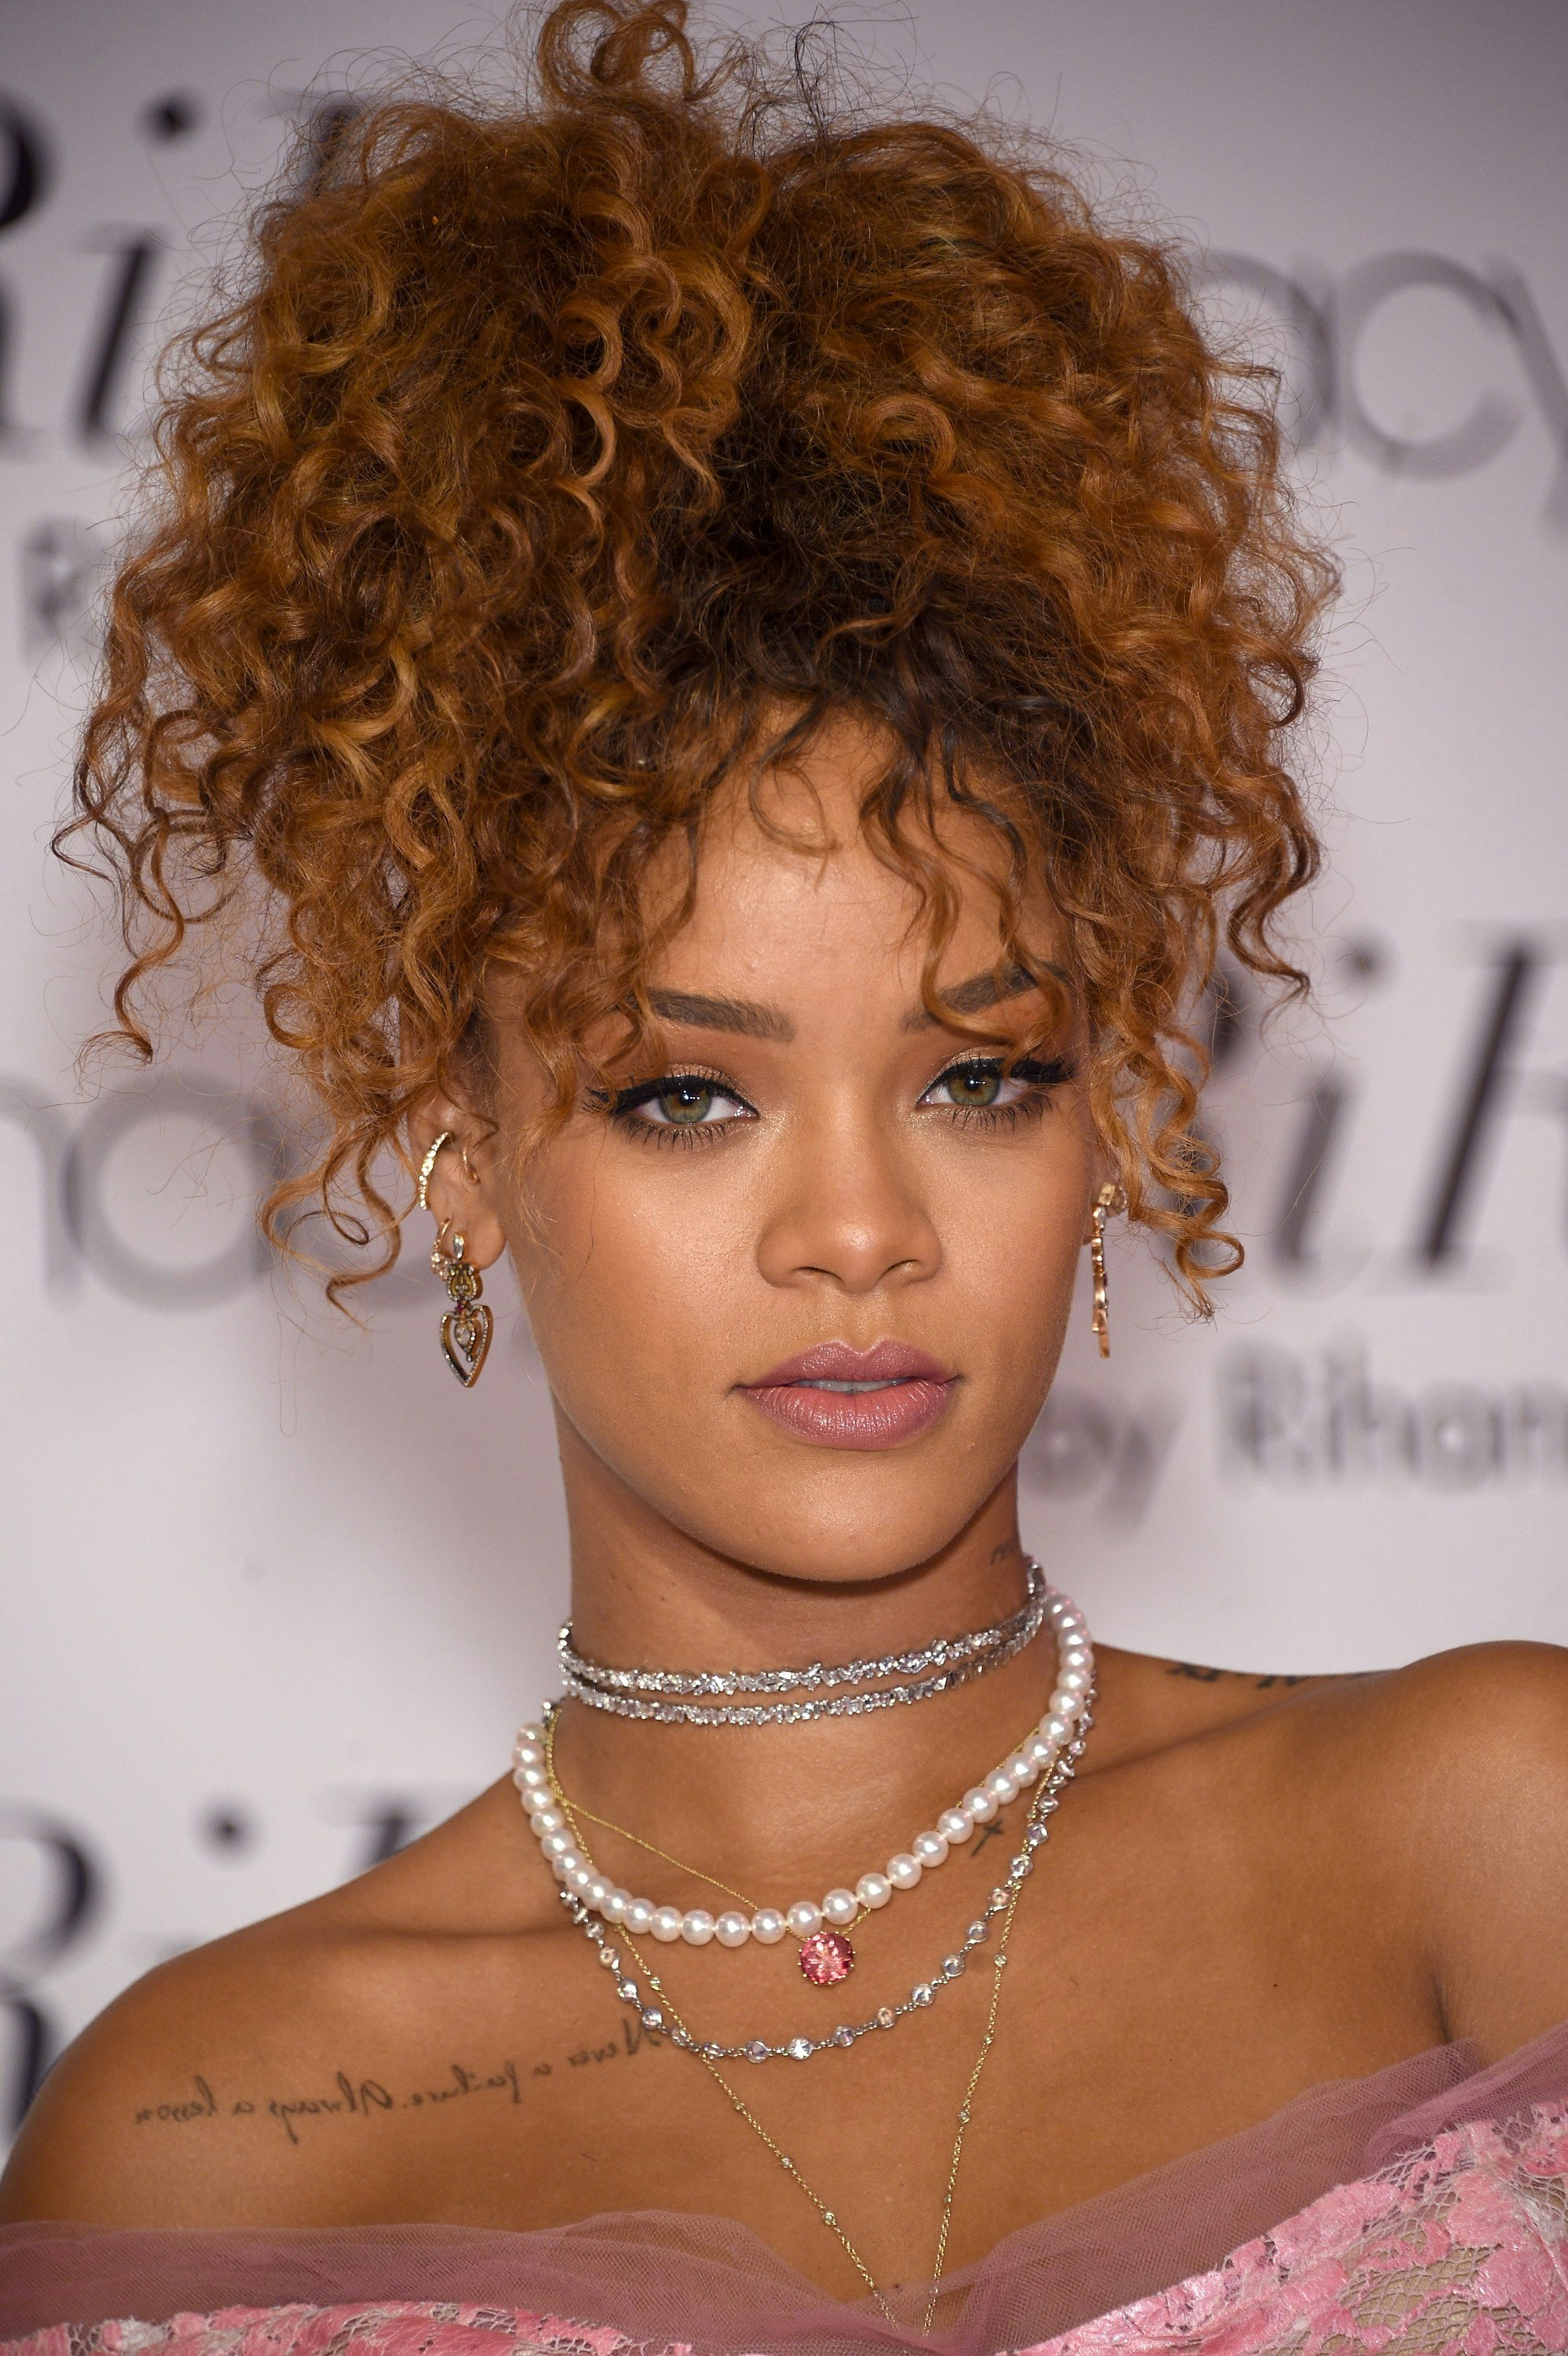 Rihanna Sueño Peluca de pelo larga suelta Curl Pop Star 70s 80s 90s 00s  Rock Vestido de fantasía envío mundial con pagos seguros Dale más opciones  Envío asequible